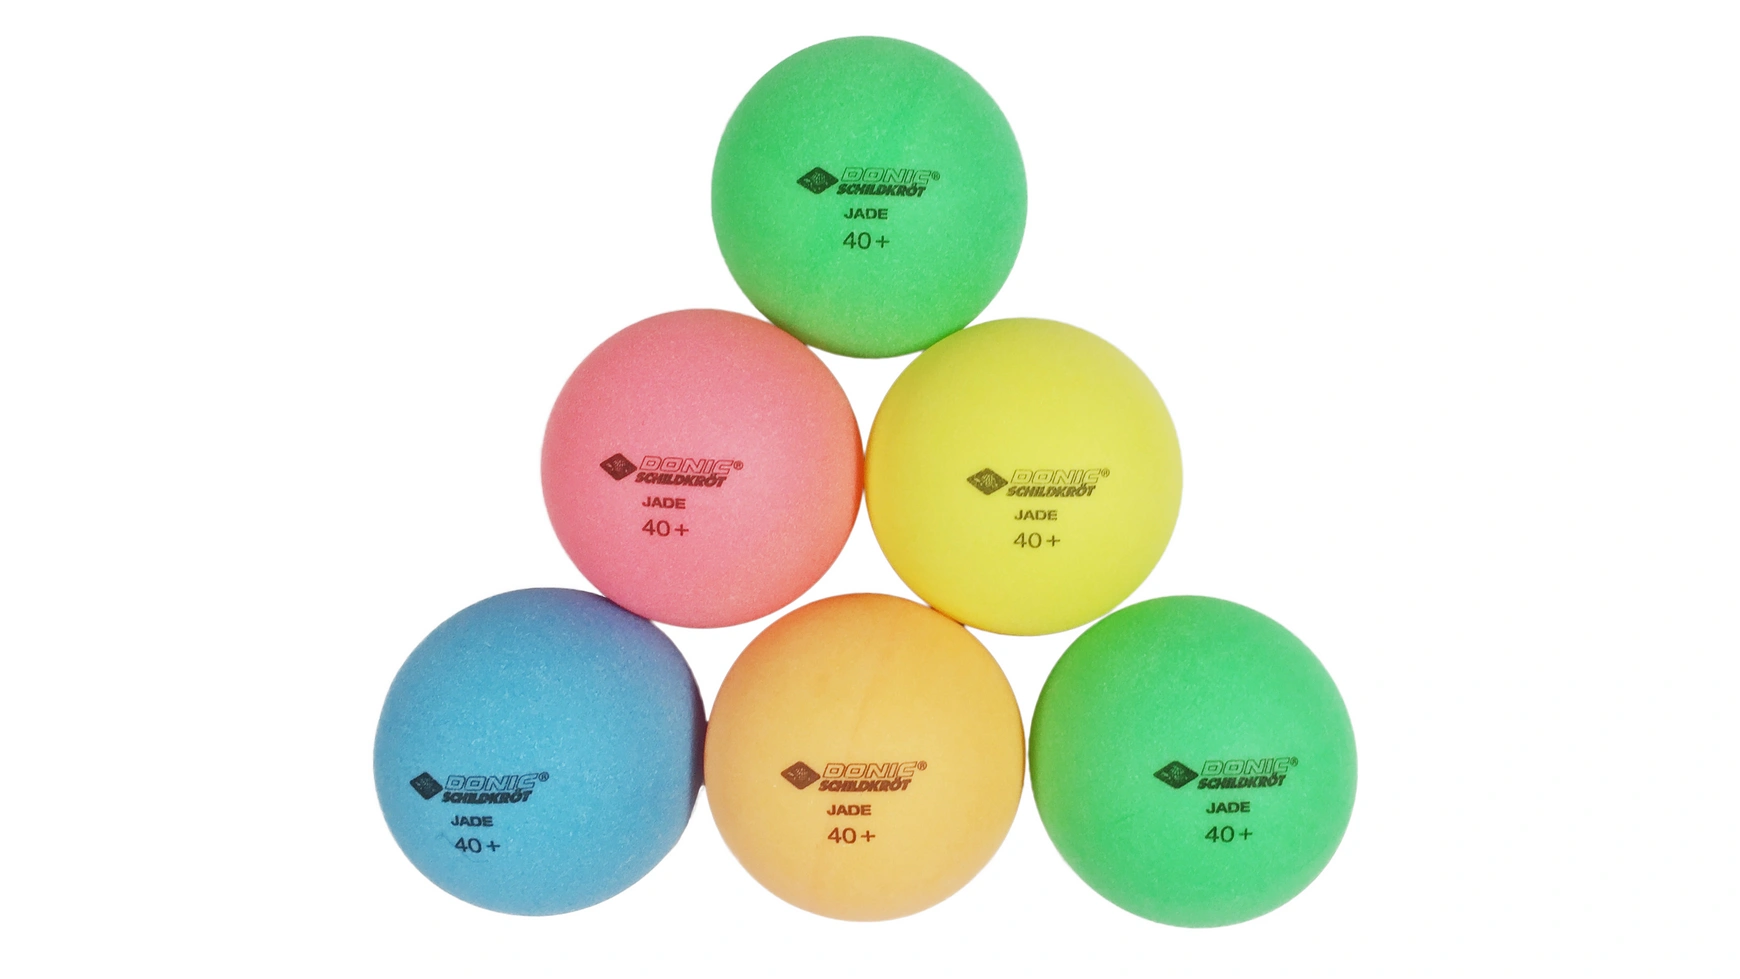 Donic Schildkröt Мяч для настольного тенниса Color Popps, 6 цветных шариков качества Poly 40+ donic schildkröt мяч для настольного тенниса jade качество поли 40 6 штук в блистере белый